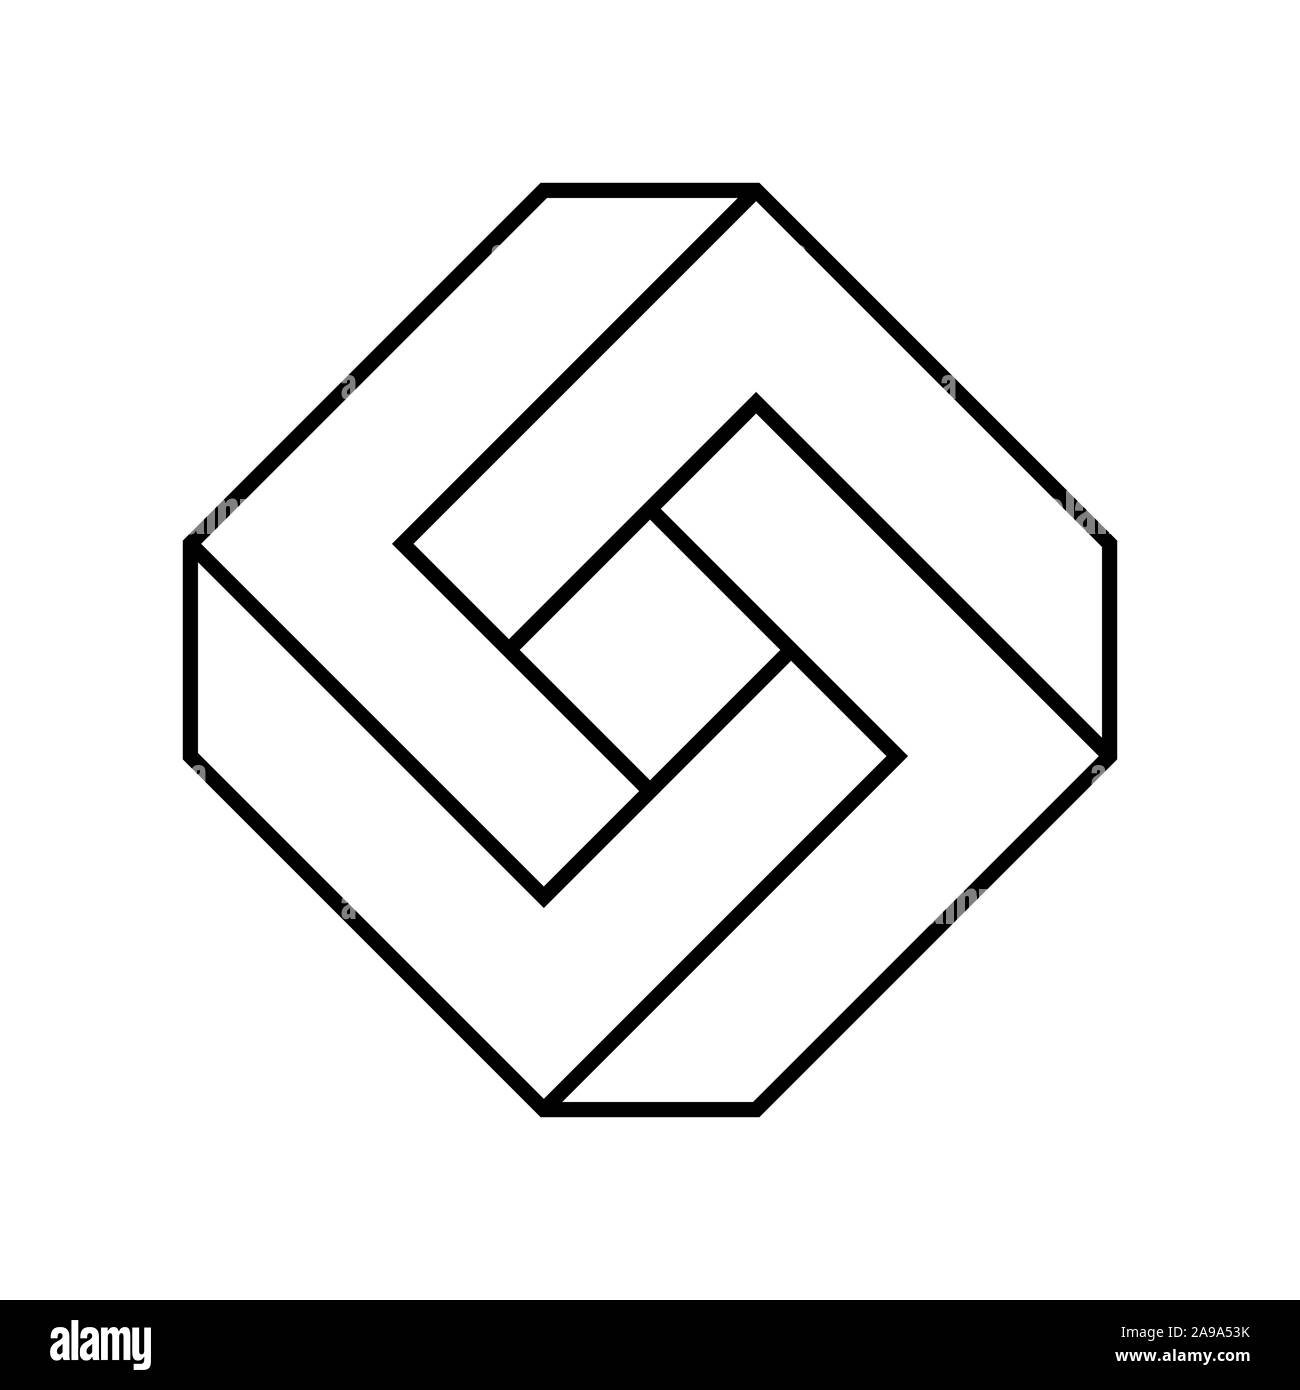 Géométrie Des Illusions De L'infini. Les Triangles De Formes 3d Impossibles  Bouclent La Collection De Vecteurs Escher D'hexagones. Boucle D'illusion  3d, Cube Infini Géométrique